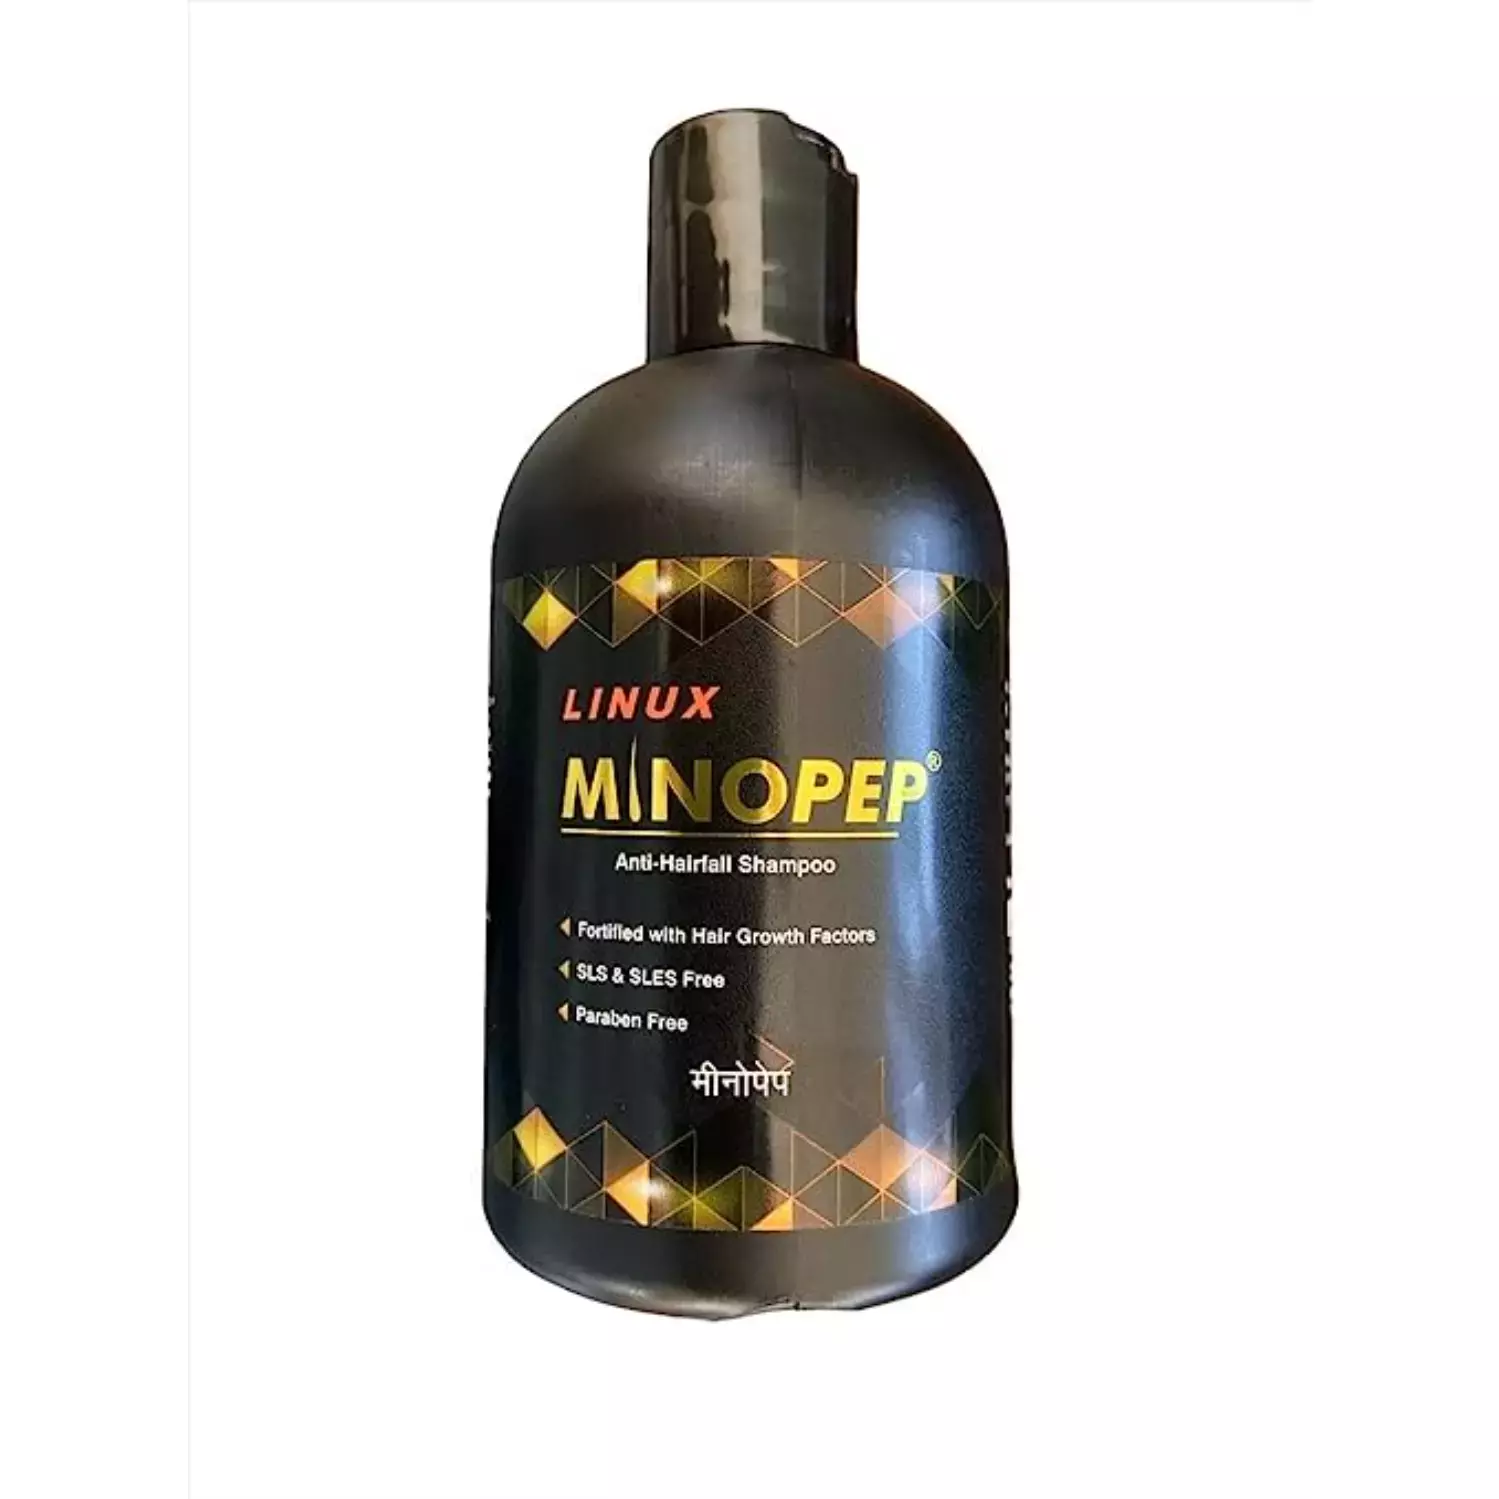 Minopep Anti-Hairfall Shampoo